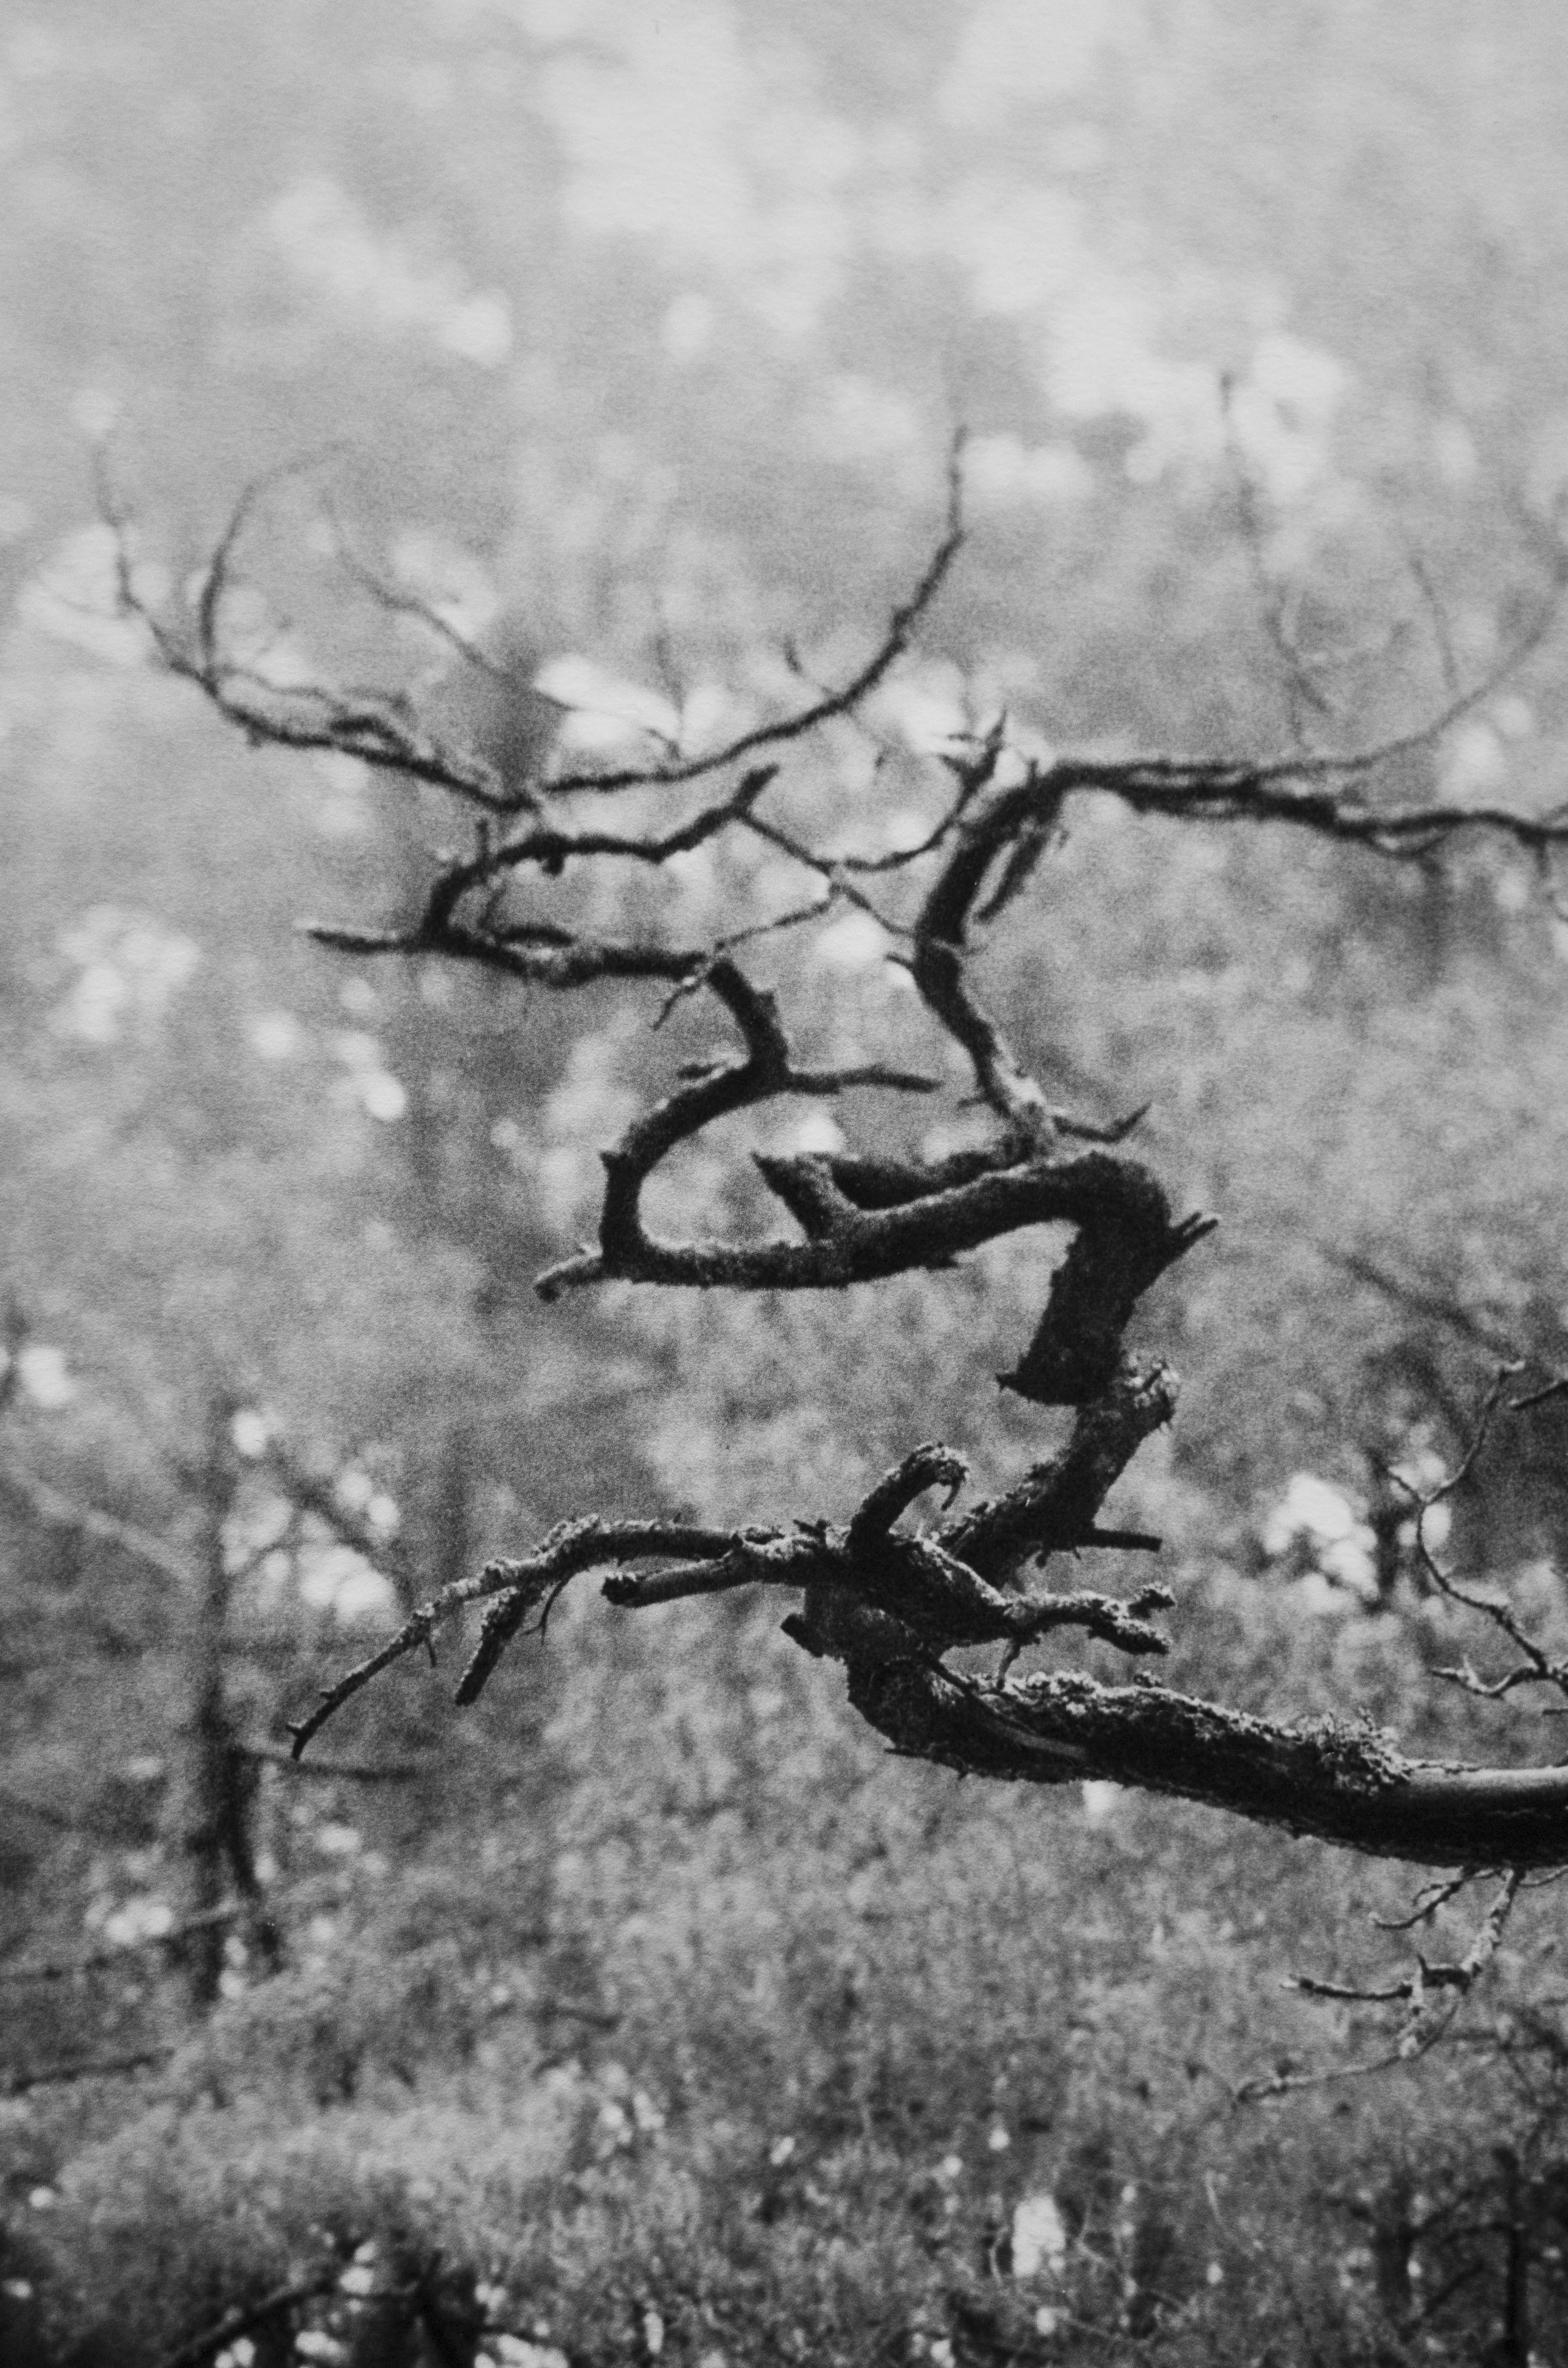 Pin de la Baltique - photographie analogique de forêt en noir et blanc, édition limitée à 20 exemplaires - Contemporain Photograph par Ugne Pouwell